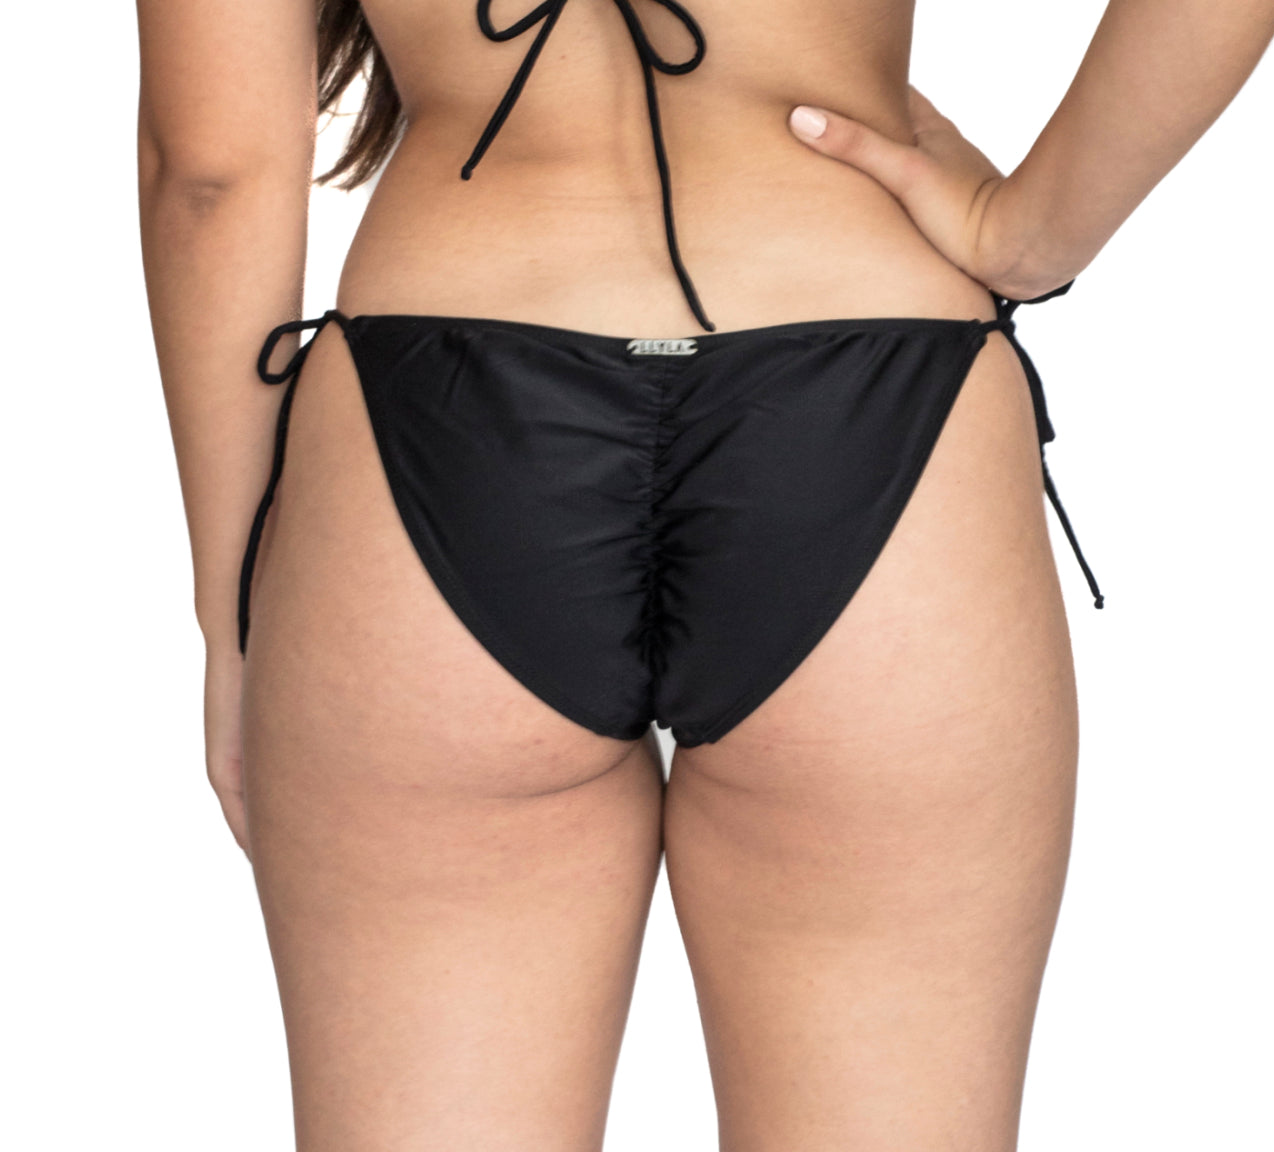 LLYLA Black String Bikini brief - with ruched back